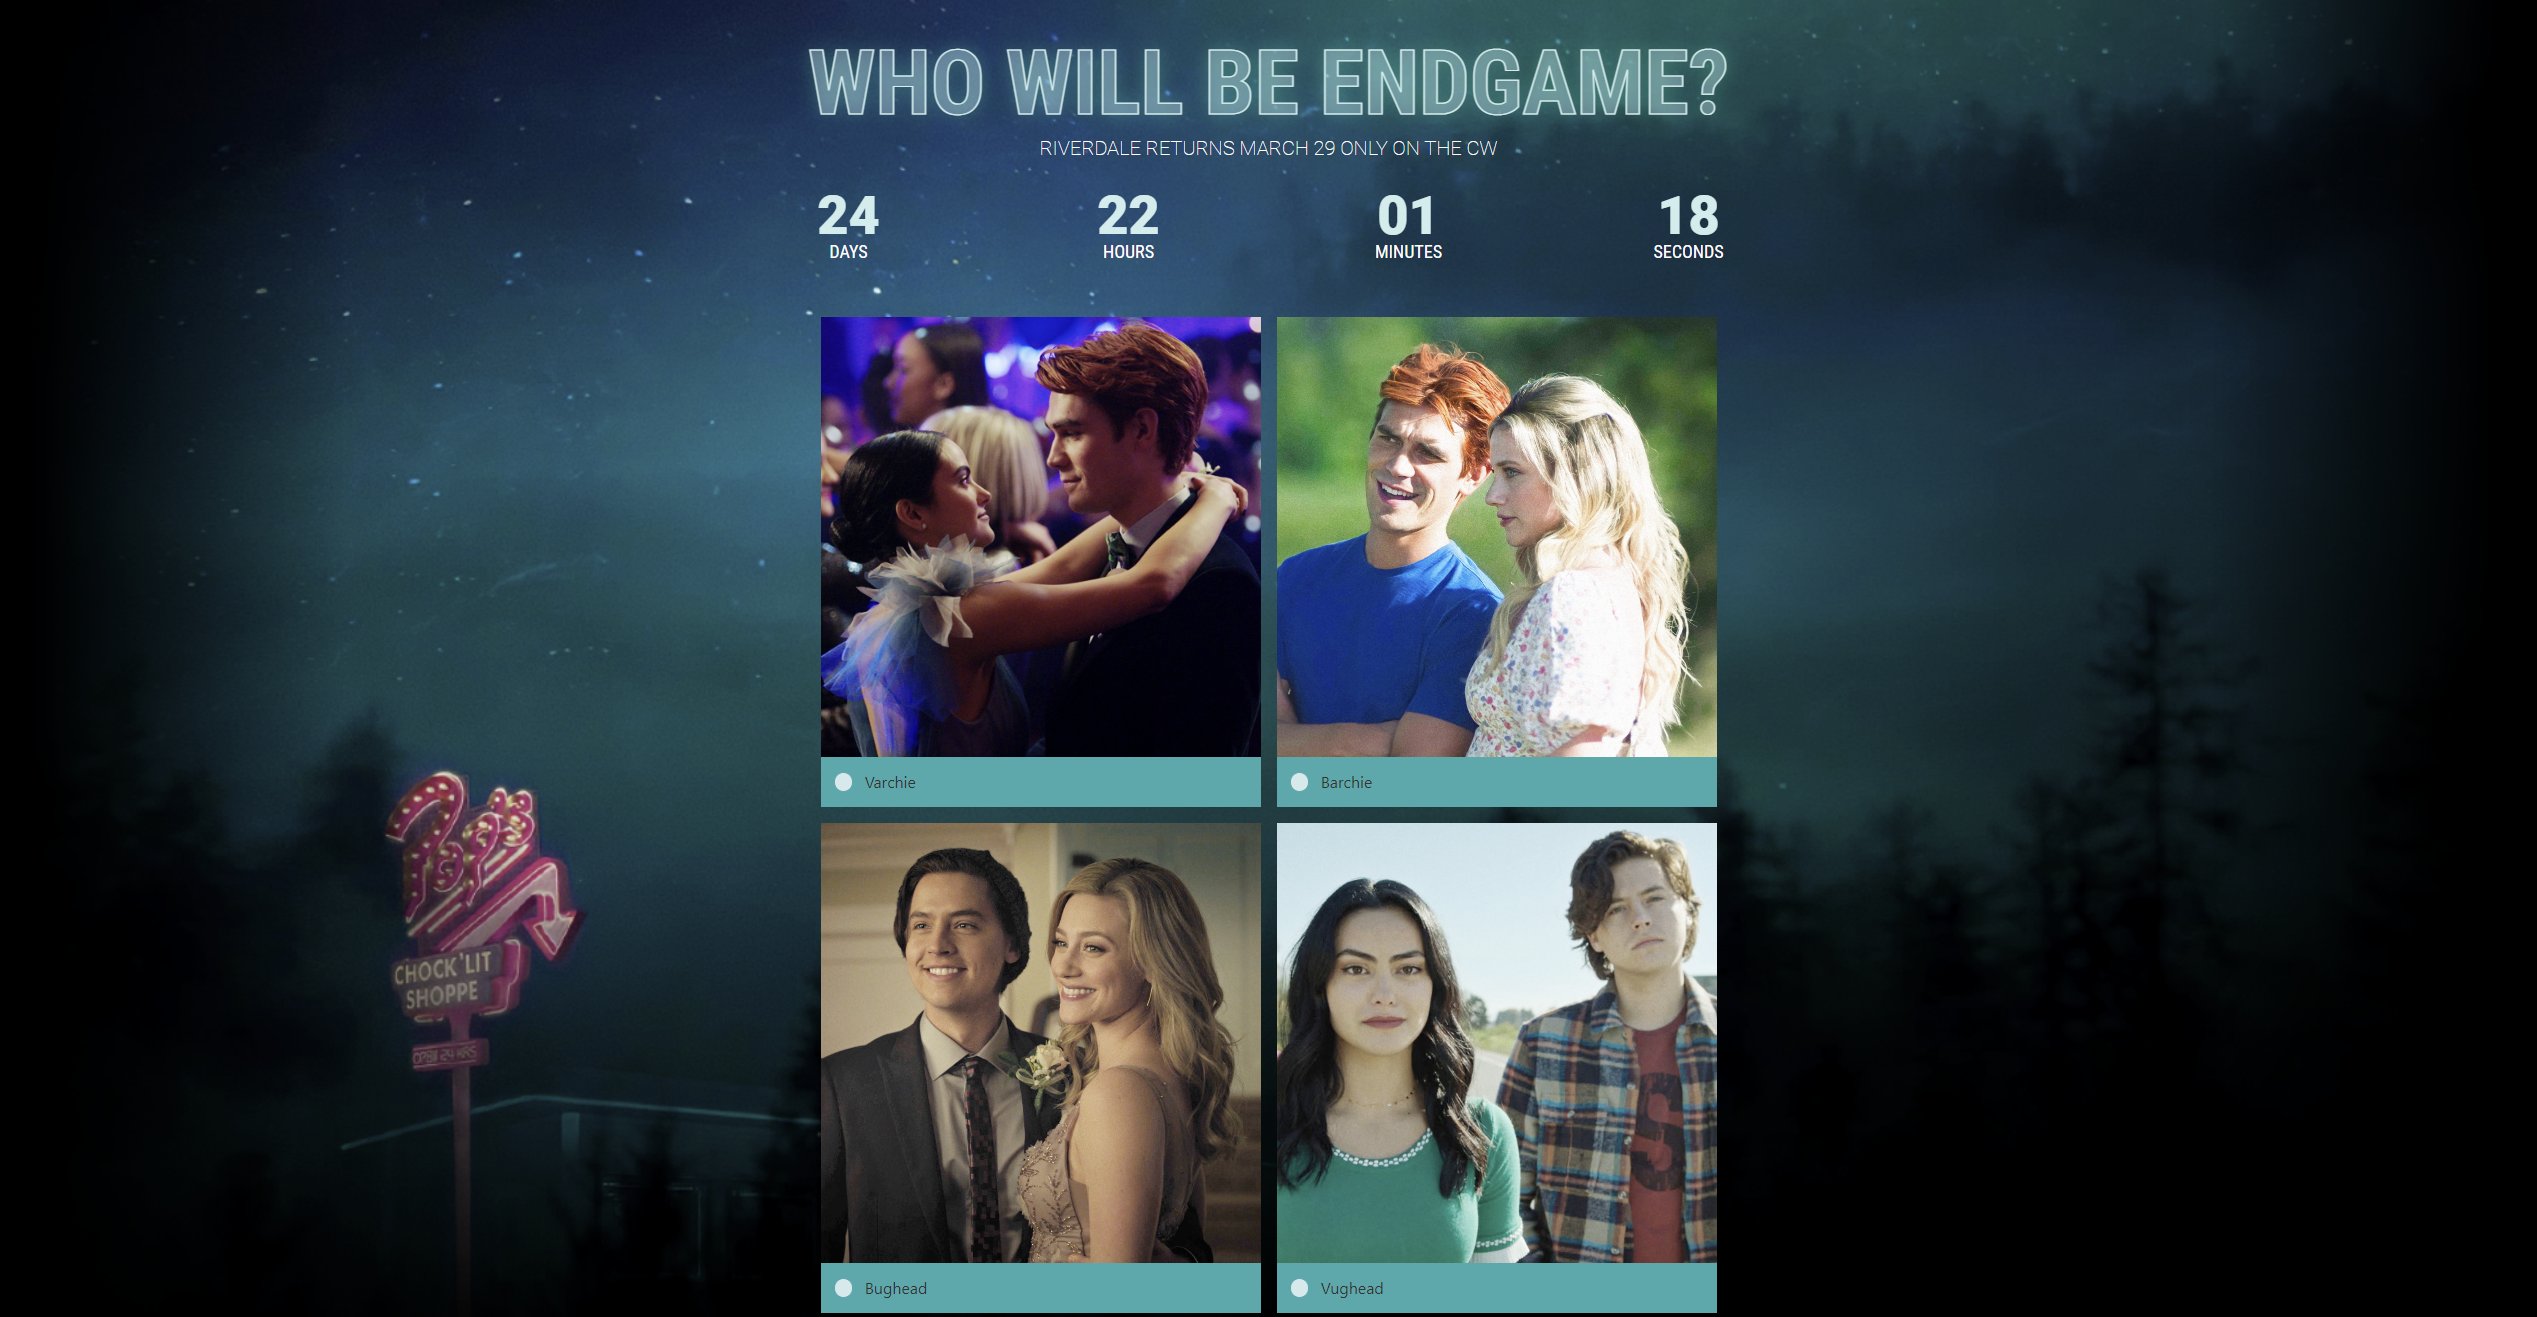 Riverdale Brasil on X: Quem será o casal ENDGAME de #Riverdale? Vote AGORA  no seu casal favorito em:    / X